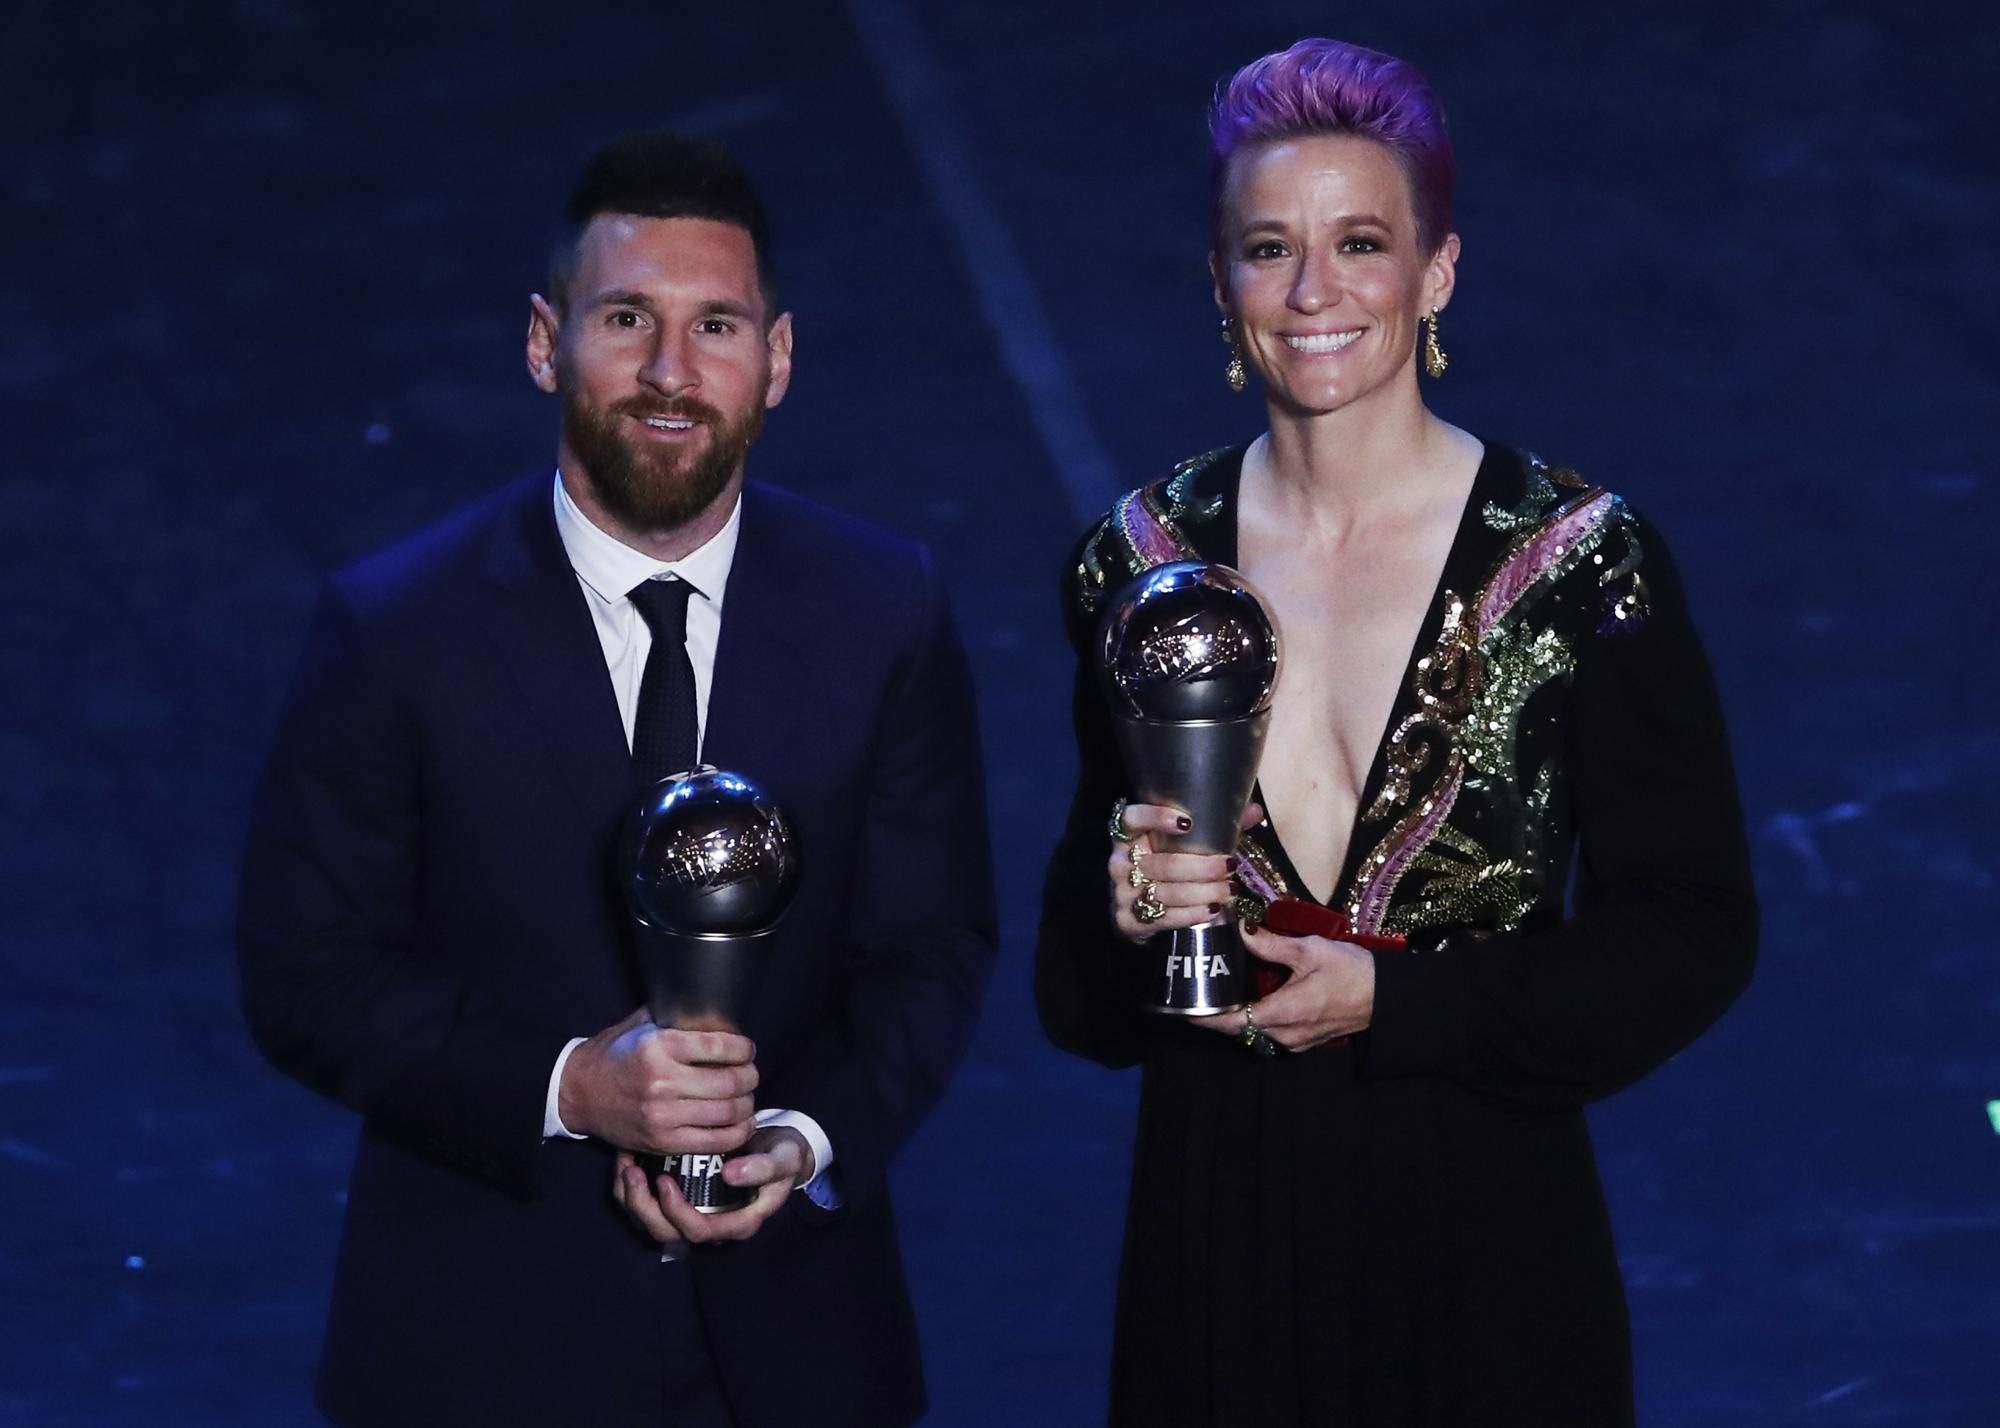 Ženská futbalová hviezda Megan Rapinoeová a Lionel Messi.